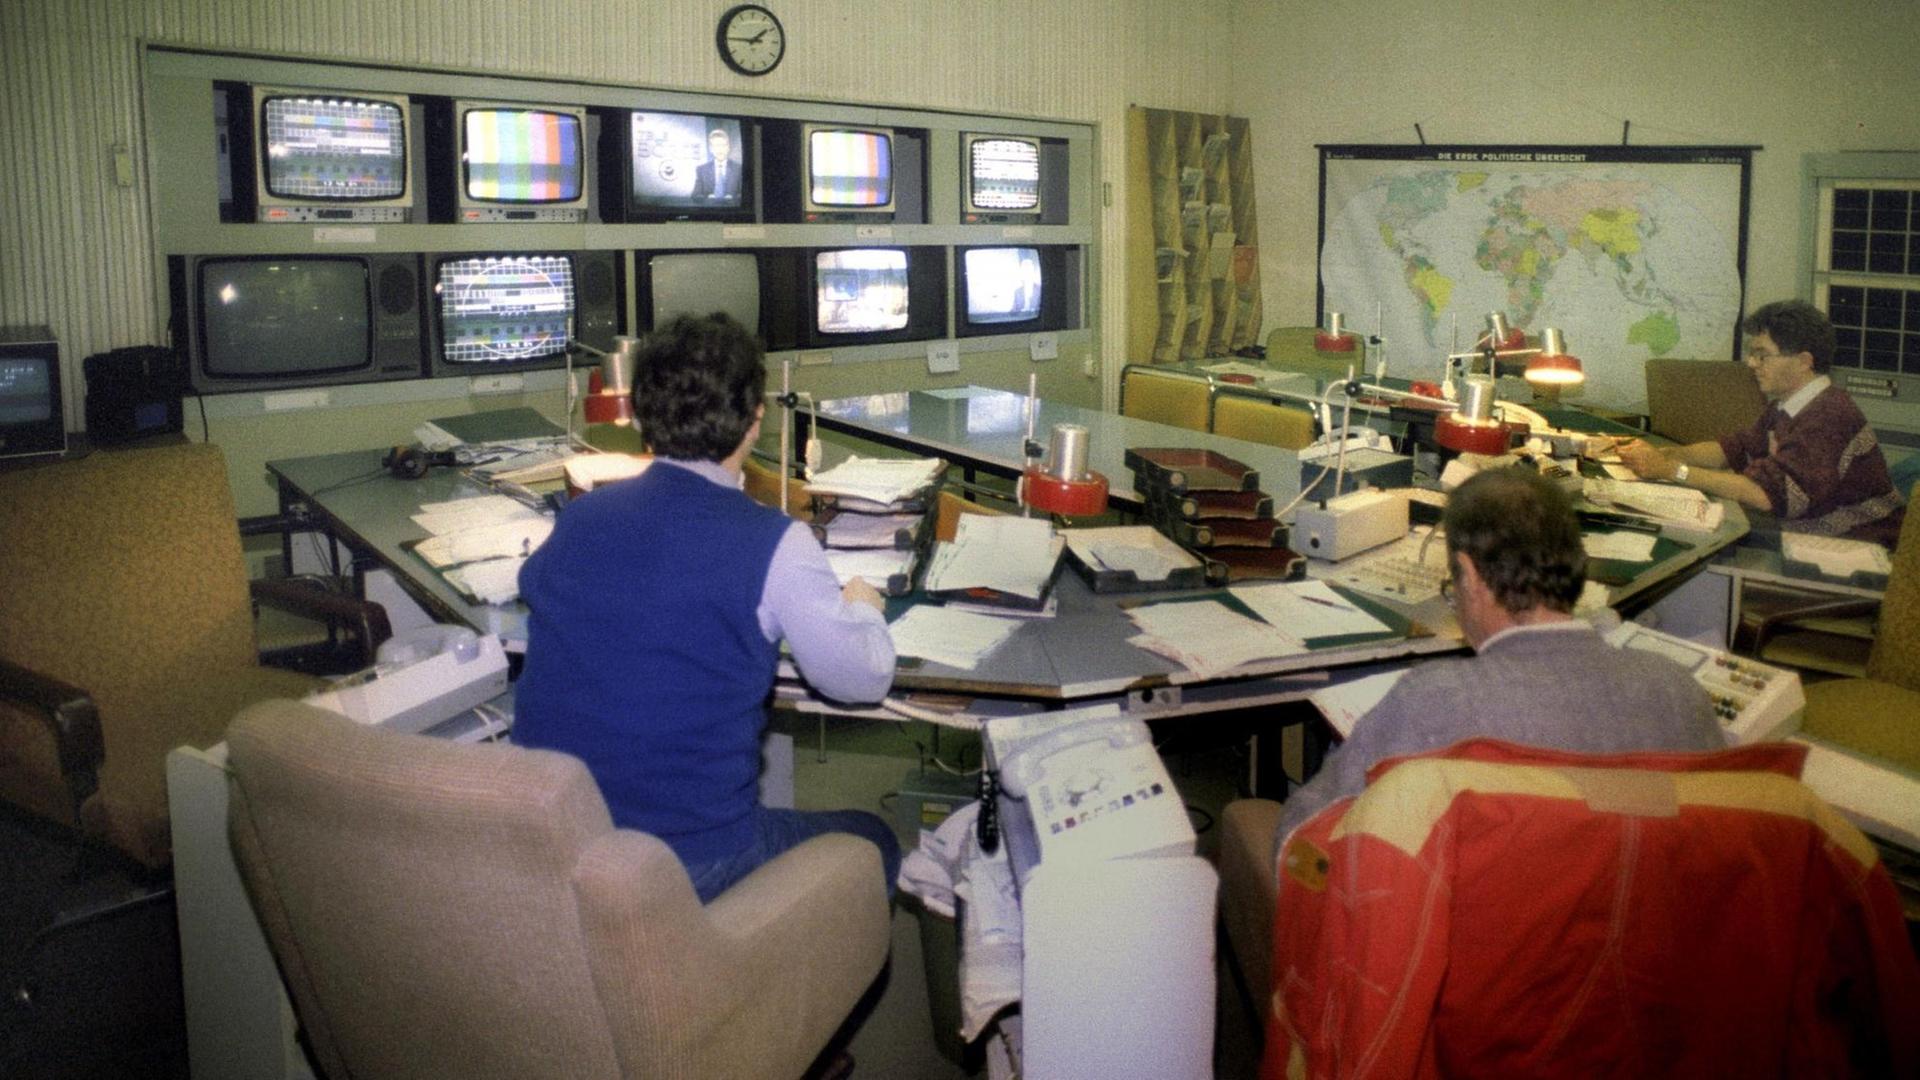 Nachrichtenraum der "Aktuelle Kamera" am 01.01.1991 in Adlershof. In einem Raum sitzen mehrere Männer, an der Wand befinden sich Monitore, neben Sesseln stehen Telefone.